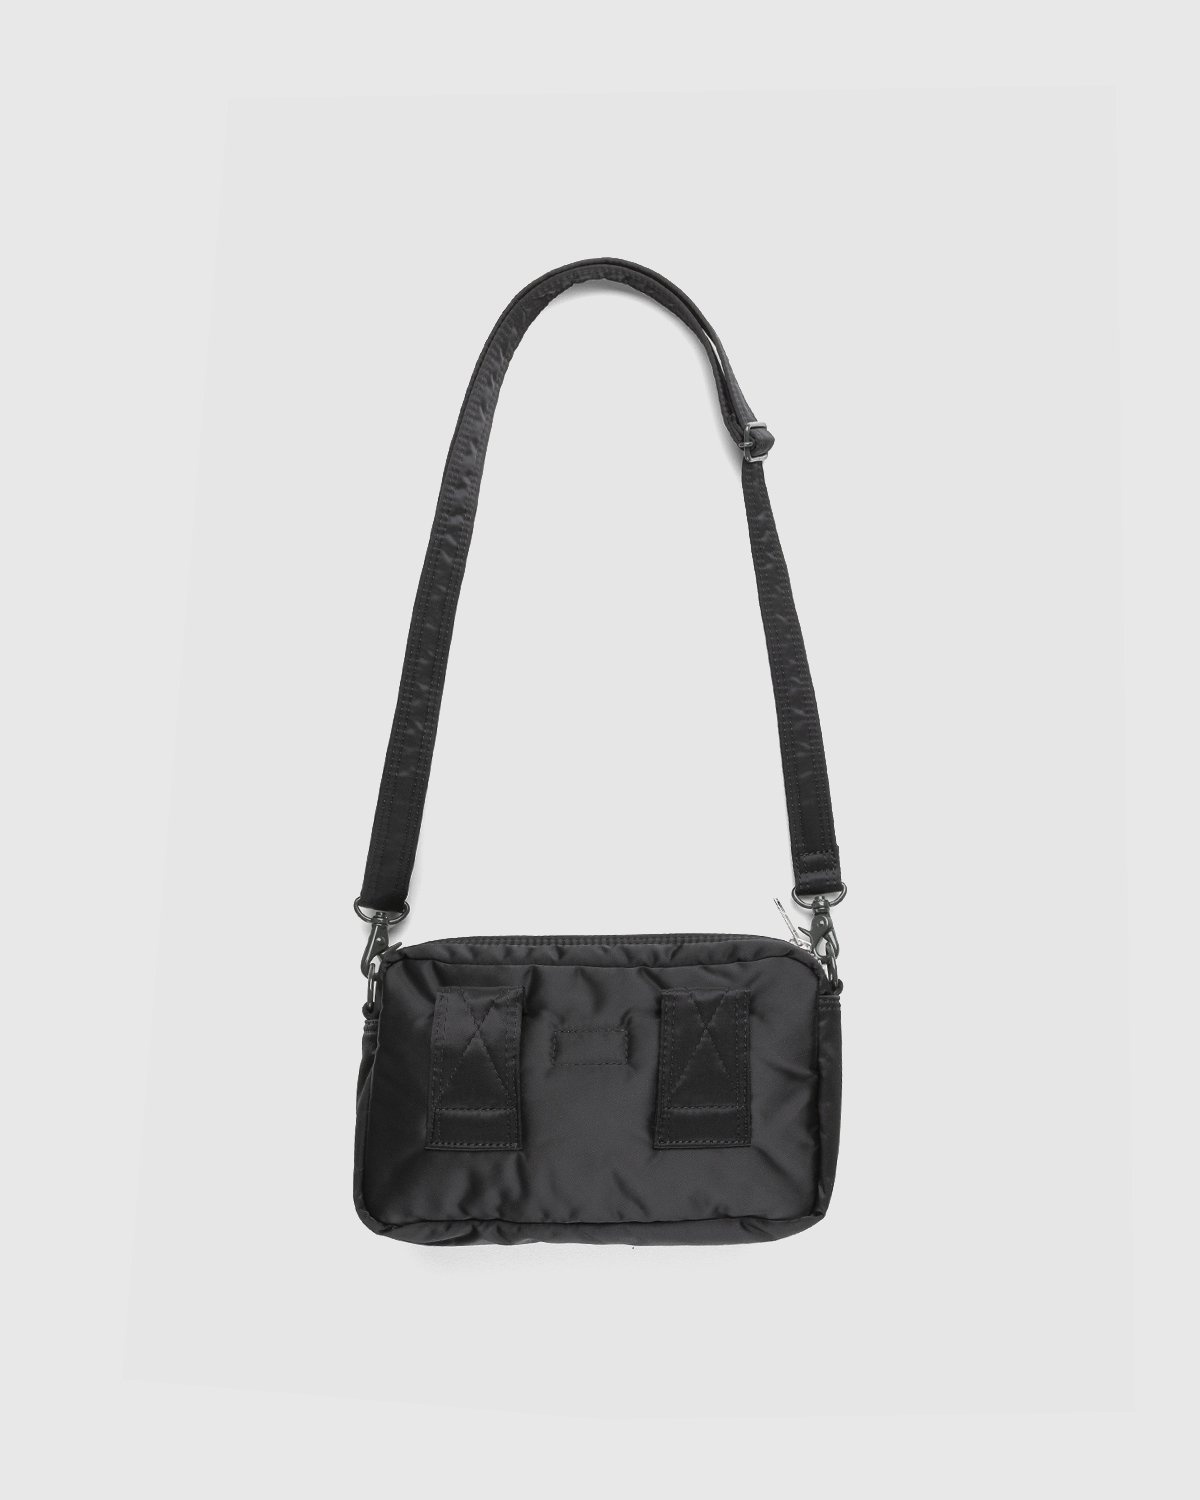 Porter-Yoshida & Co. – Tanker Shoulder Bag Black - Bags - Black - Image 2